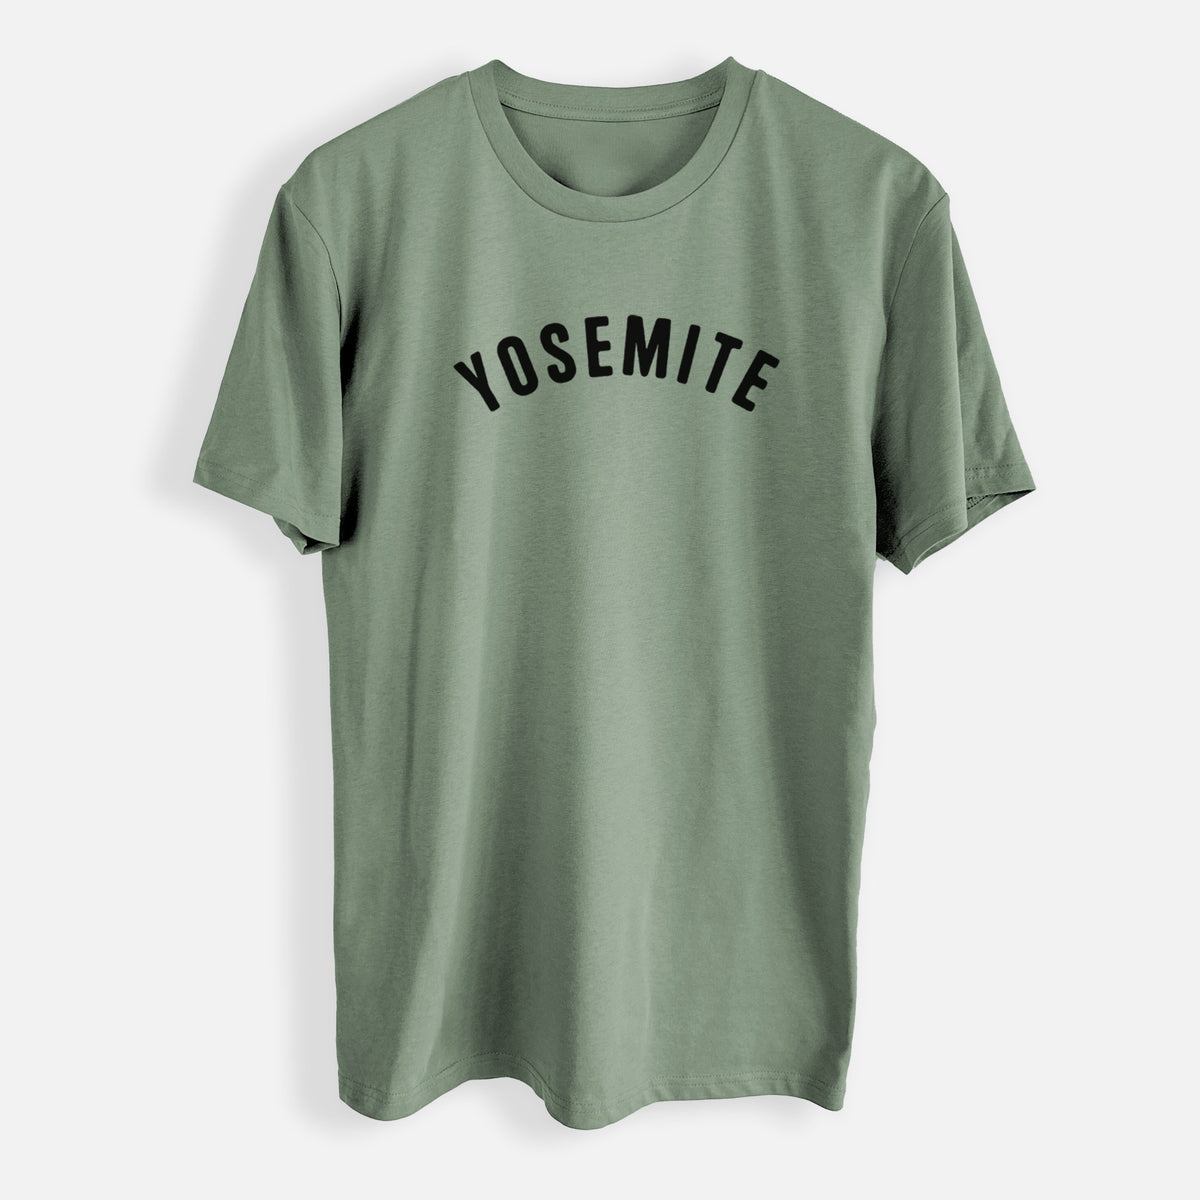 Yosemite - Mens Everyday Staple Tee